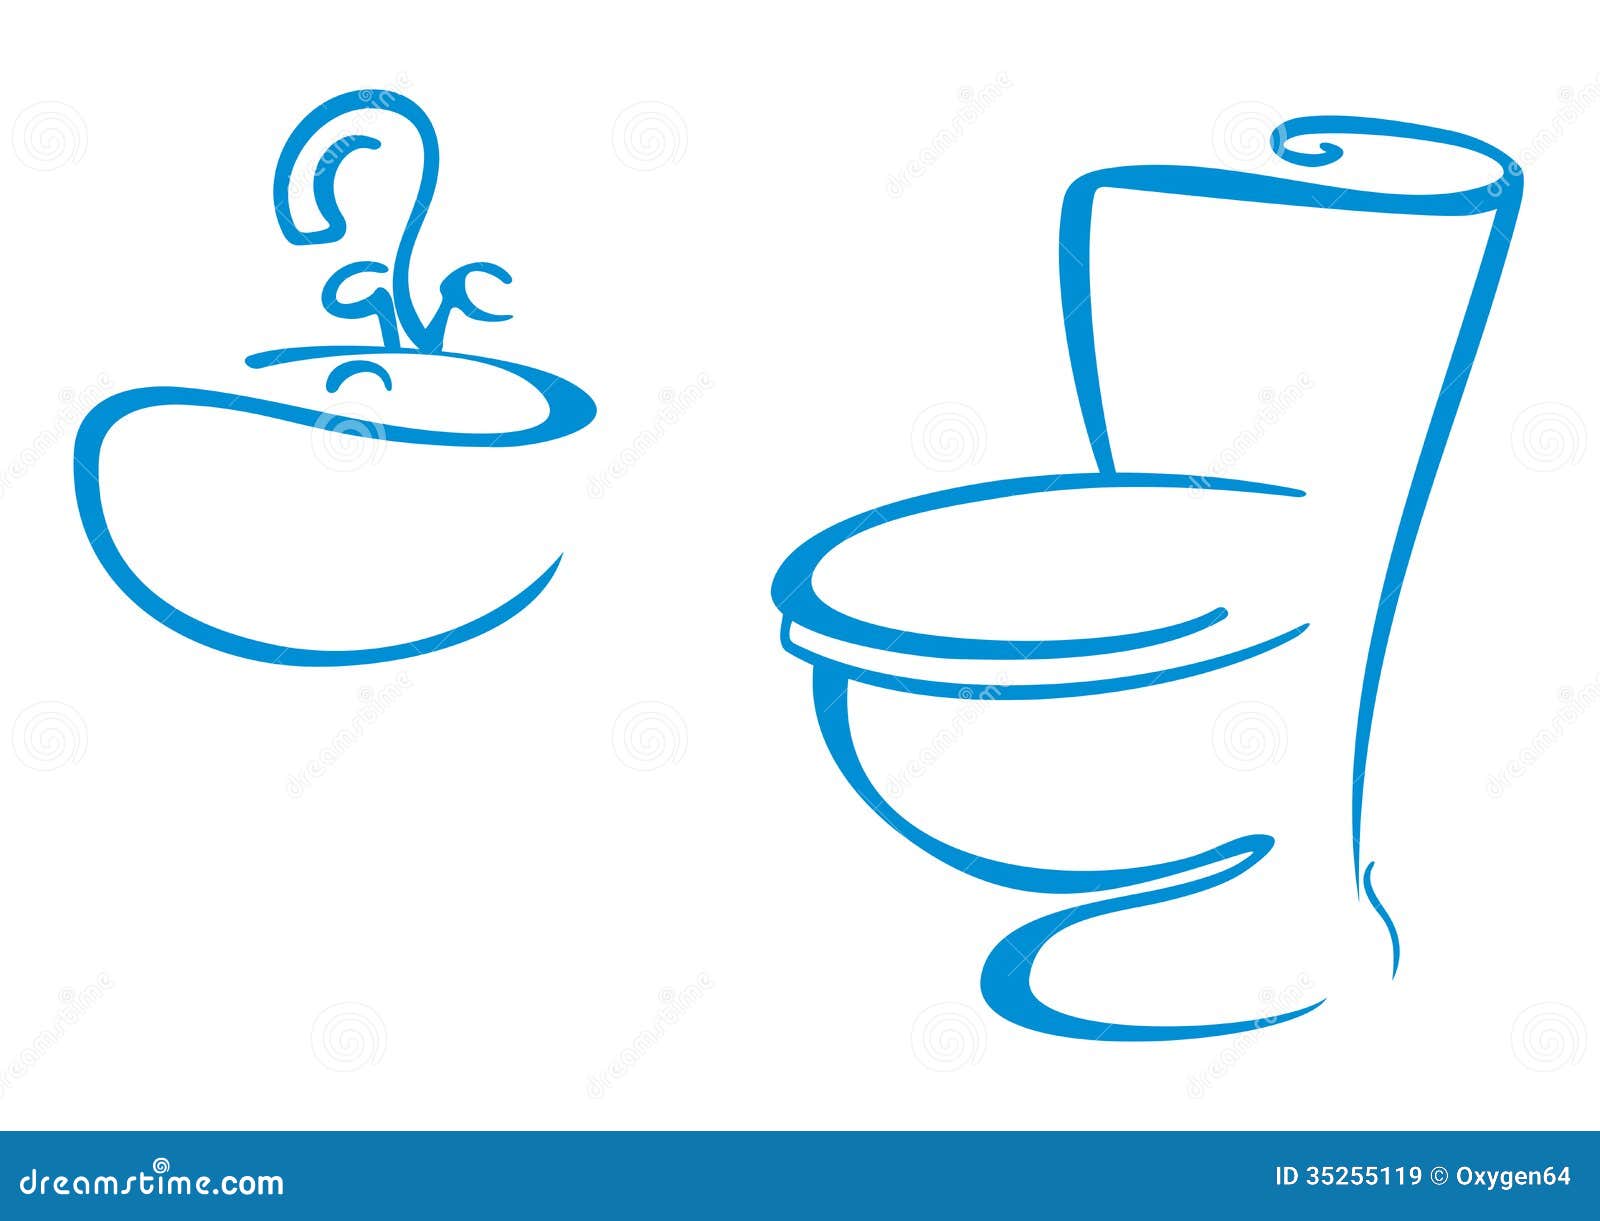 toilet symbols clip art - photo #23